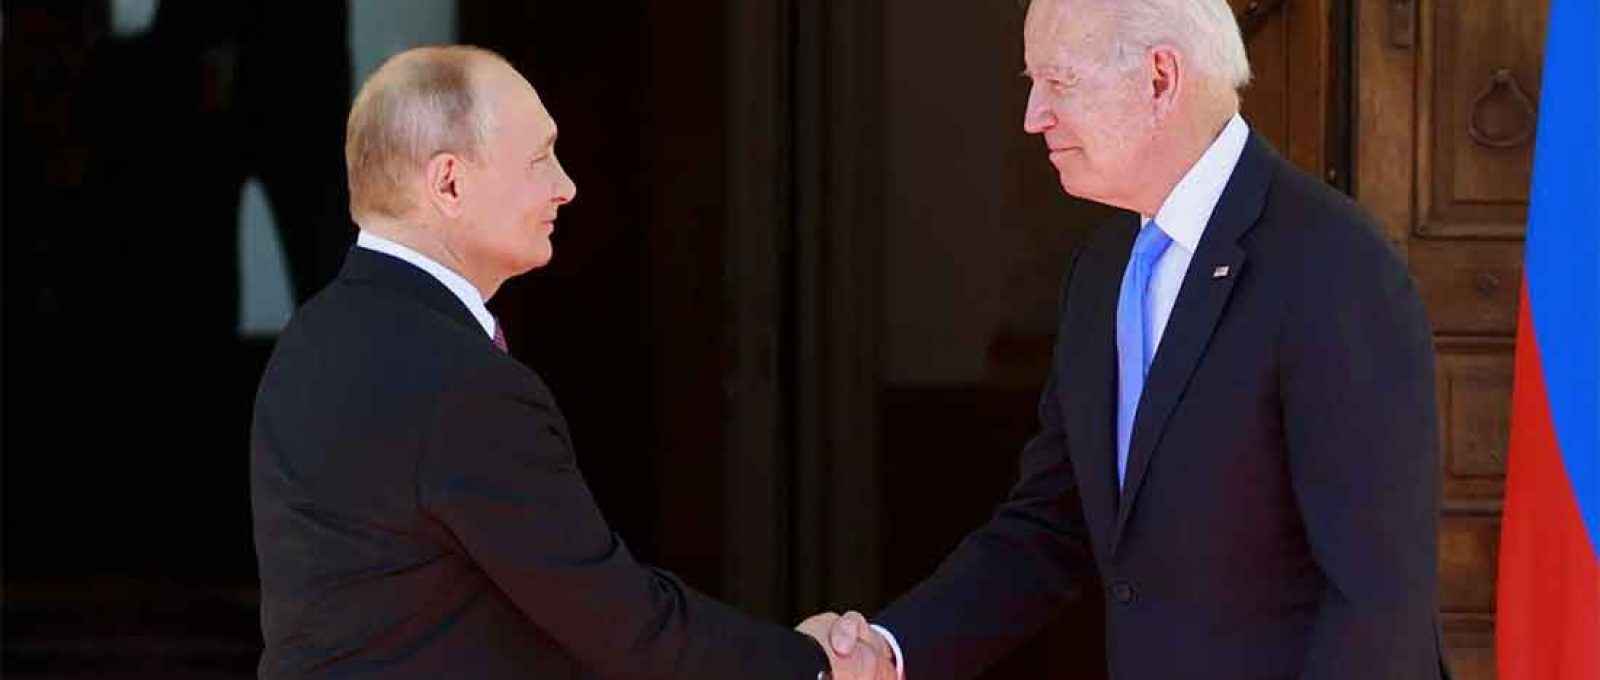 Biden e Putin cumprimentam-se antes do início da reunião (Foto: Denis Balibouse/EPA).